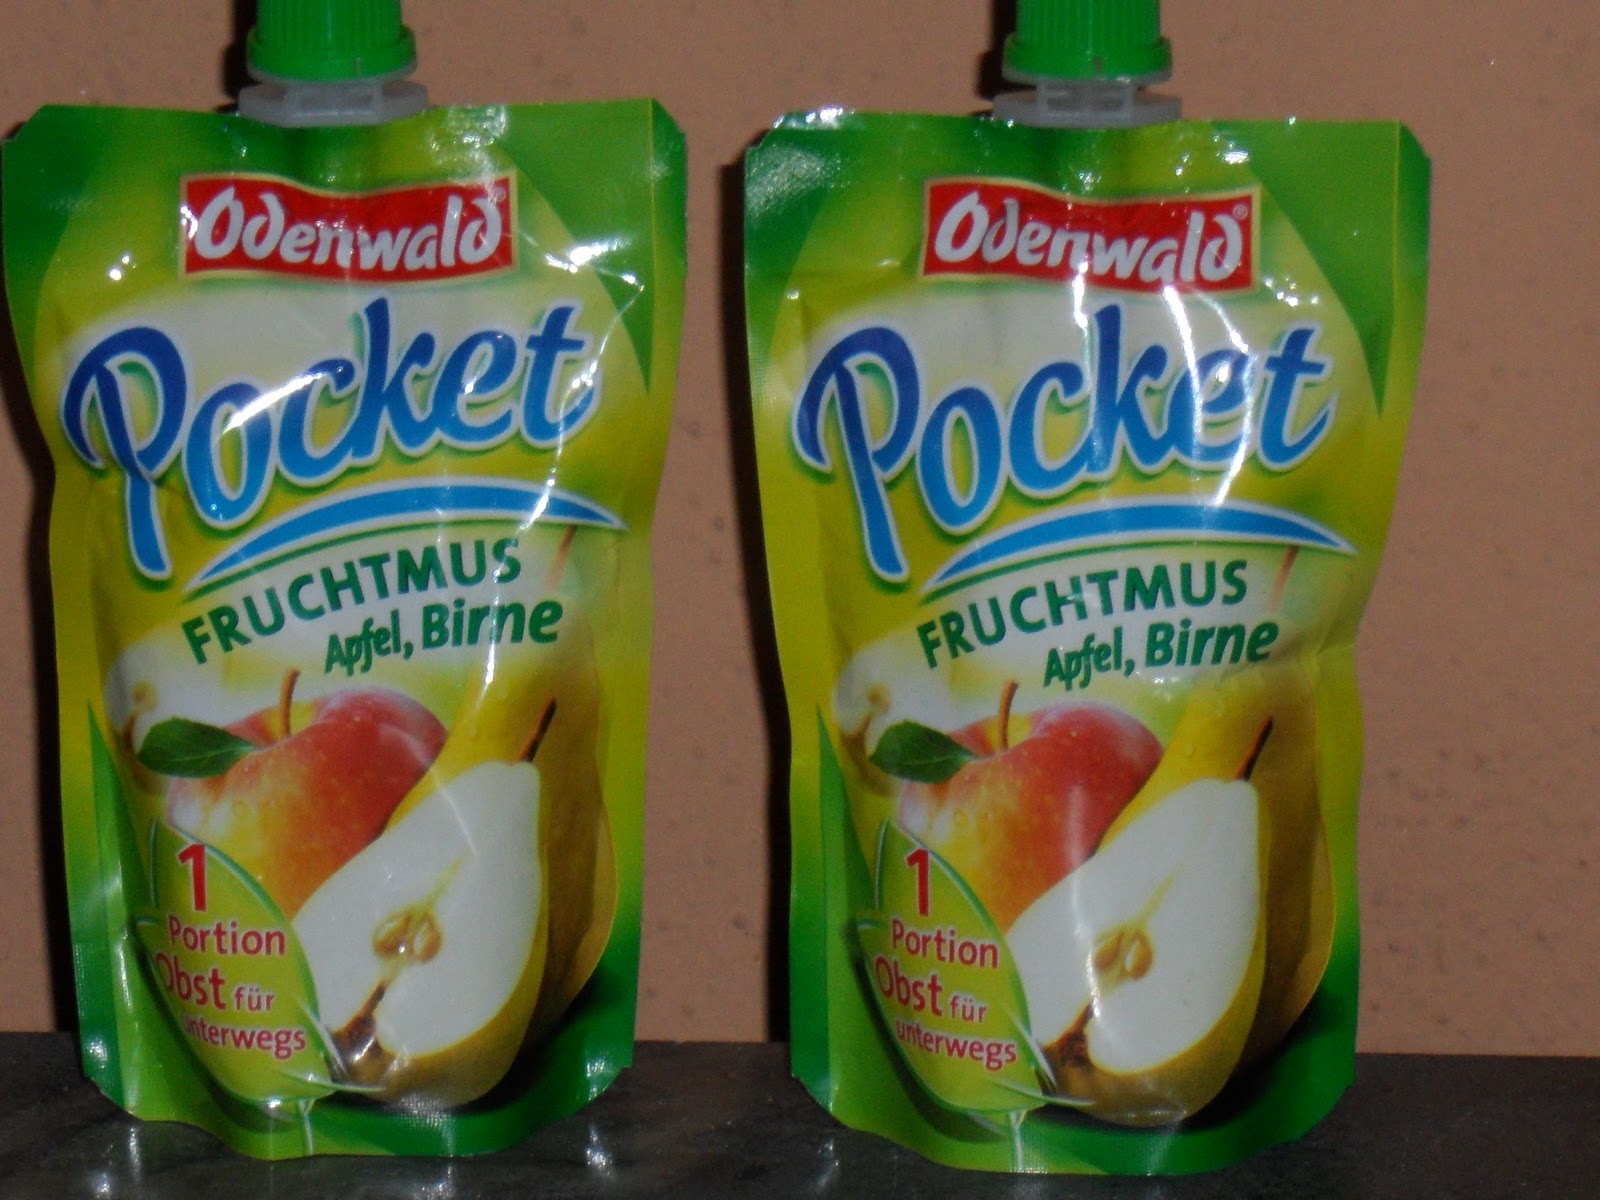 testfreak: Kennt ihr schon das neue Odenwald Pocket Fruchtmus?